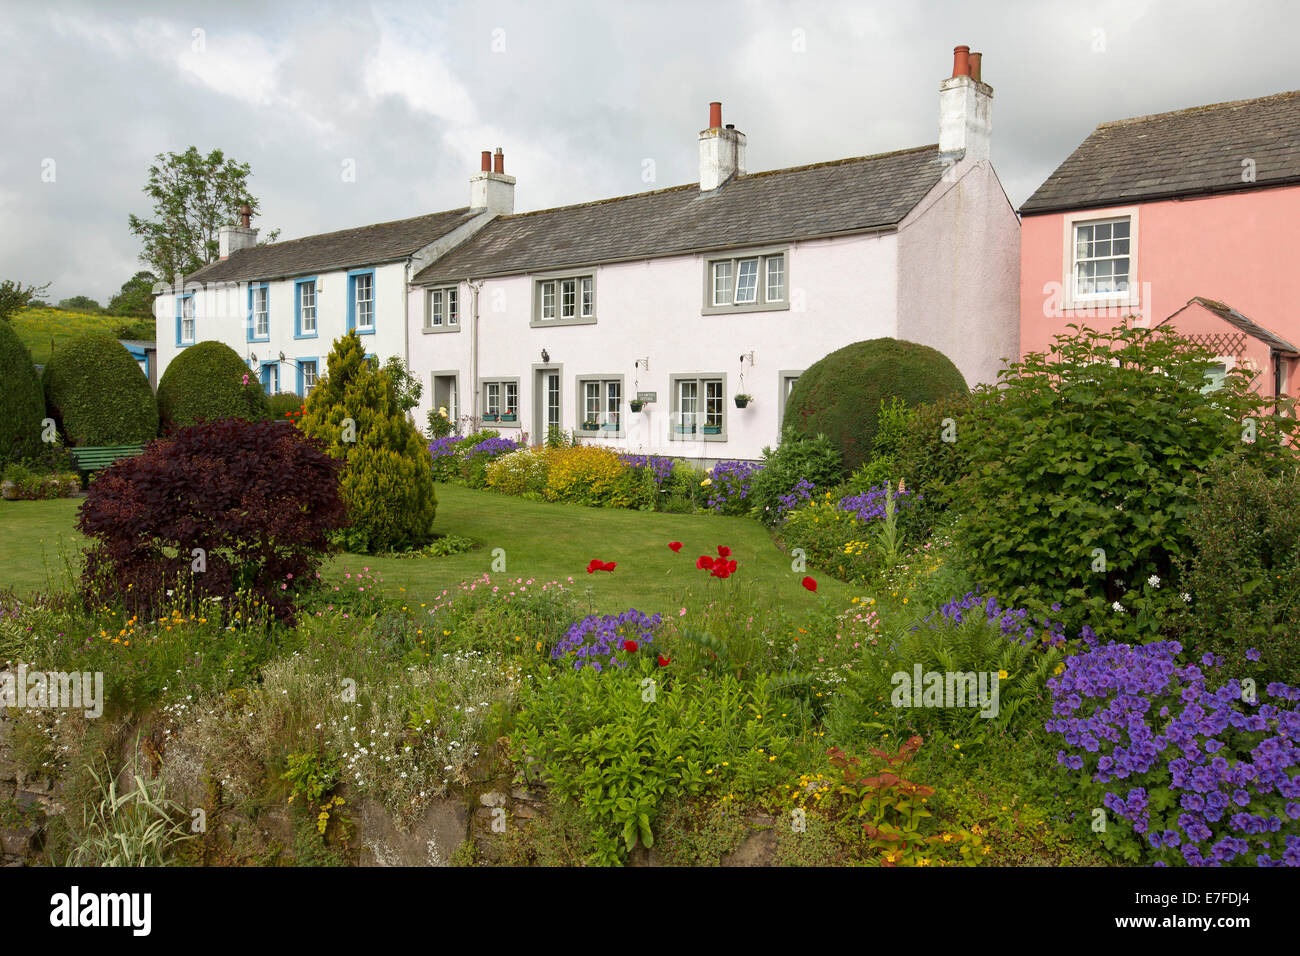 Verniciato bianco cottage inglese con giardini puliti con prati e masse di coloratissimi fiori di primavera e arbusti al villaggio di Caldbeck in Cumbria. Foto Stock